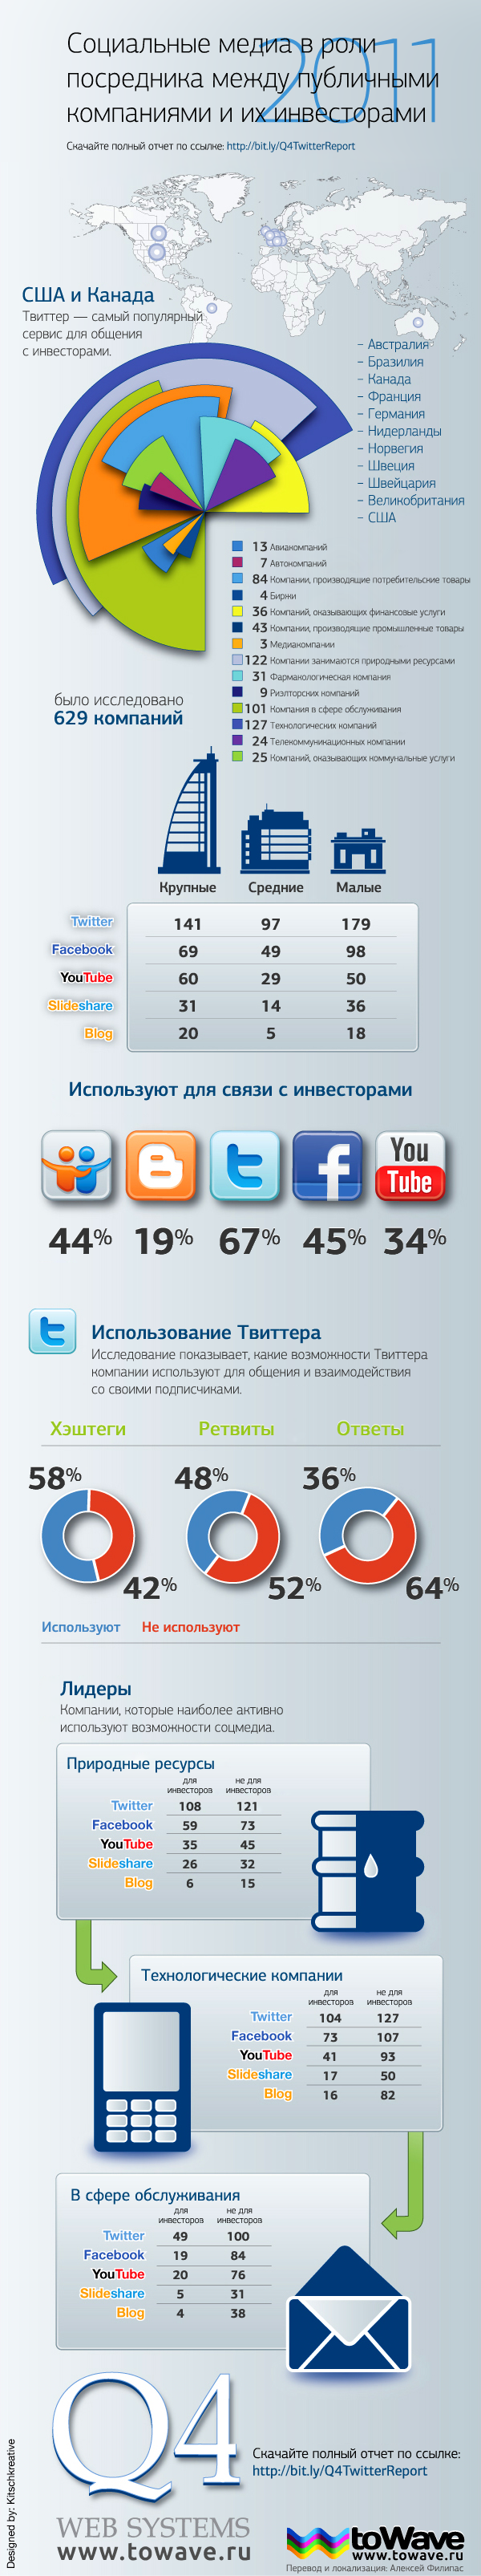 Инфографика: социальные медиа в роли посредника между компаниями и инвесторами